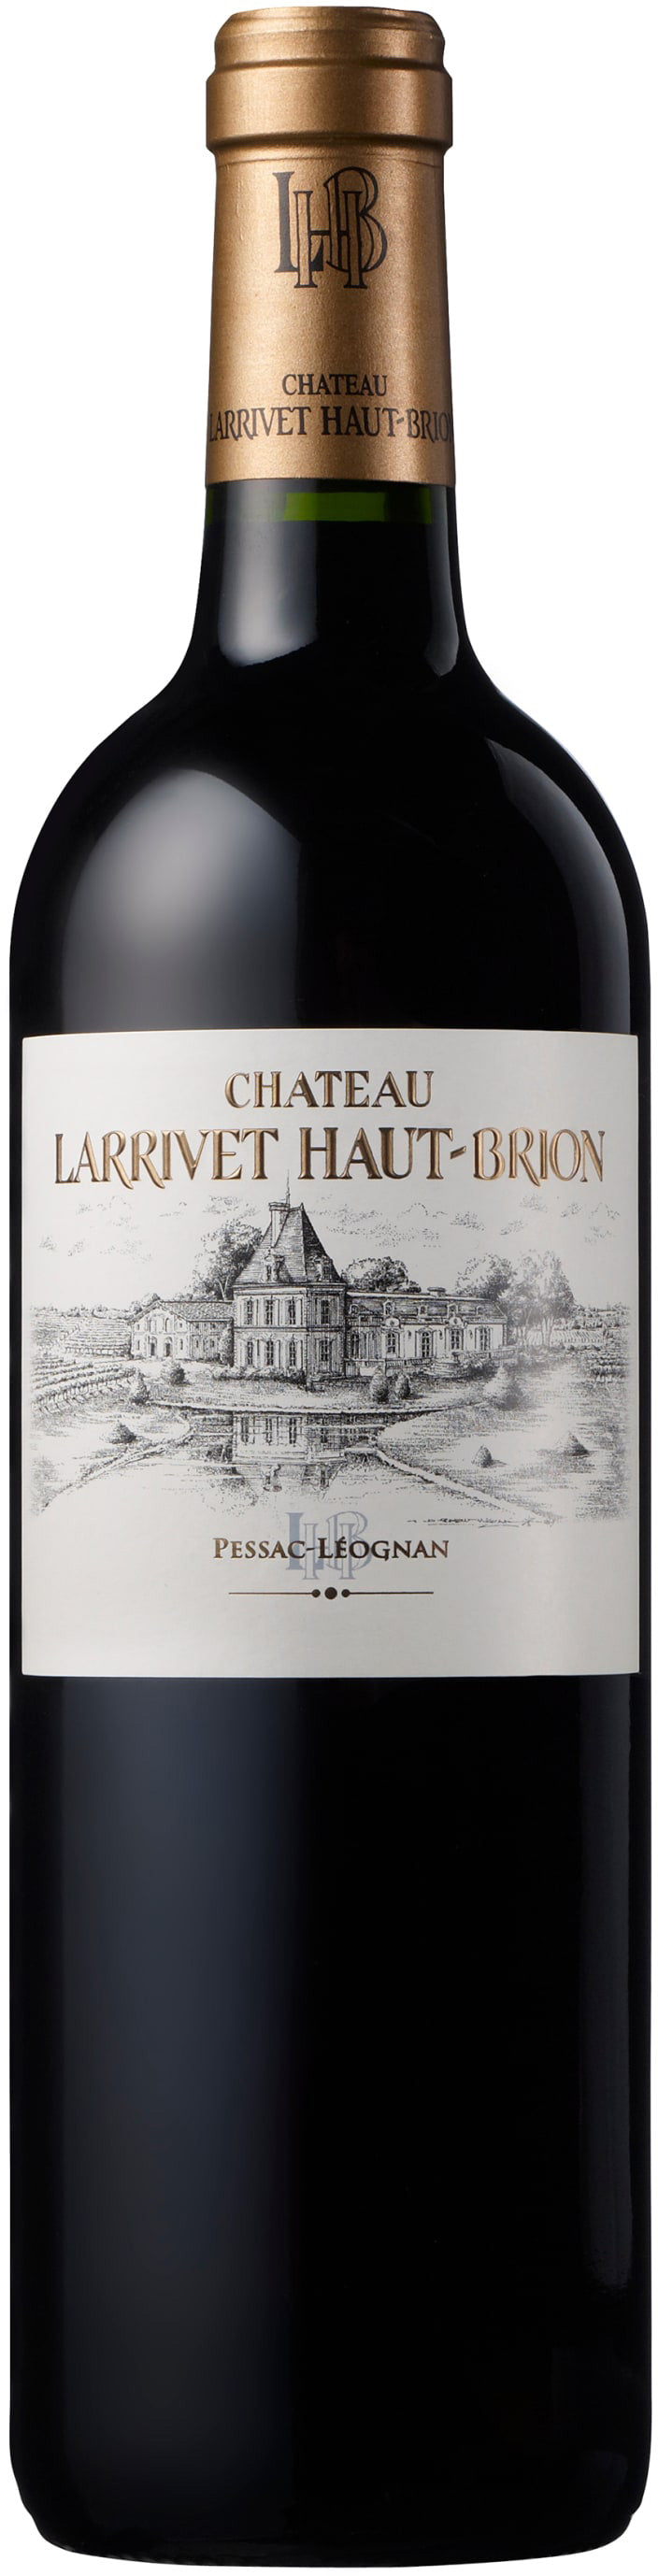 Chateau Larrivet Haut-Brion Pessac-Leognan 2017